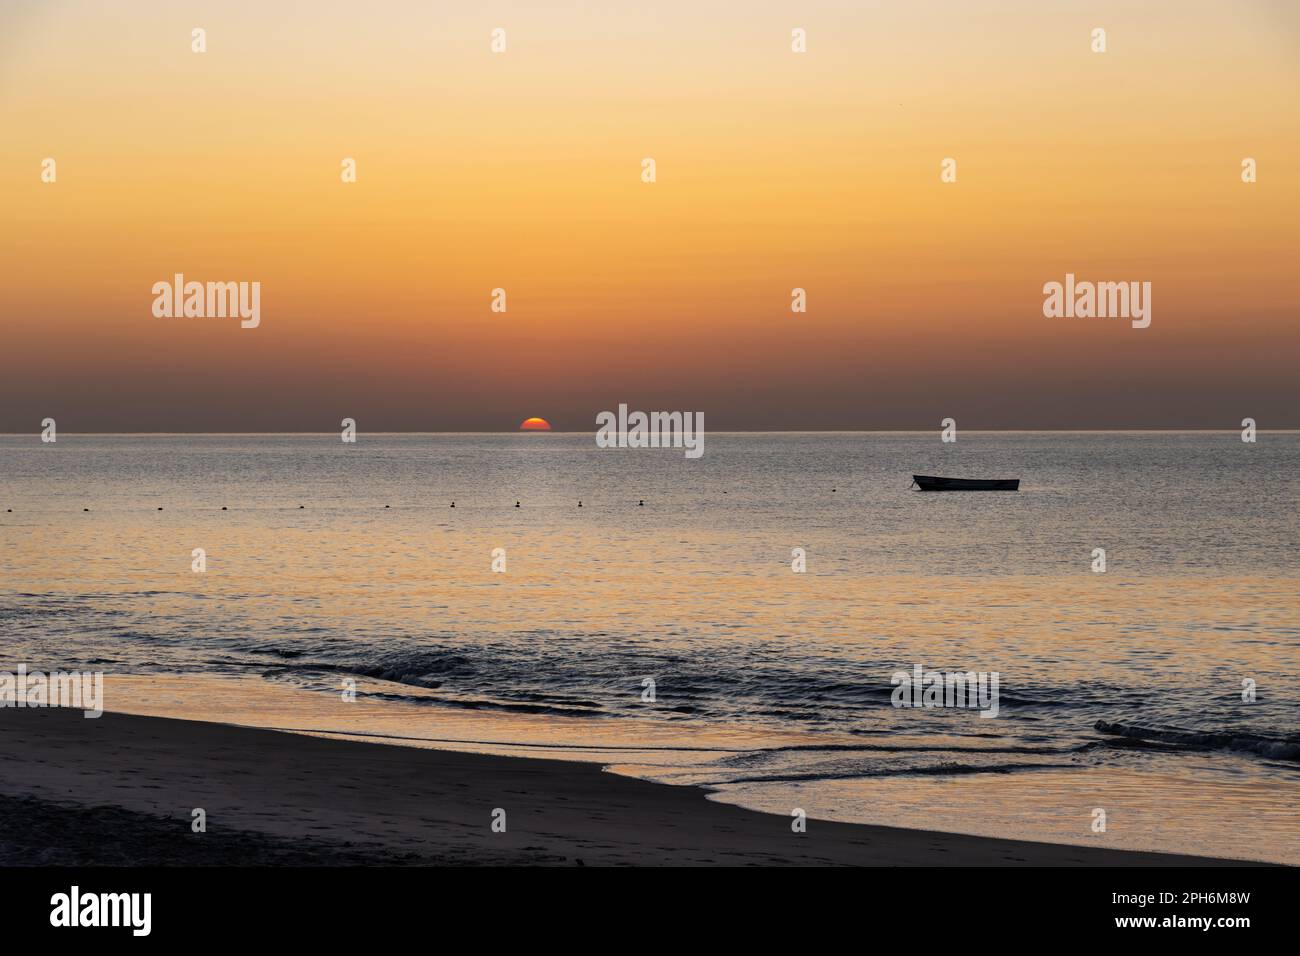 Sonnenaufgang an der Westküste von Panama. Die Sonne erhebt sich über dem Horizont mit einem leeren Boot, das auf dem Wasser schwimmt. Orangefarbener Himmel und die Sonne beginnt zu erscheinen. Stockfoto